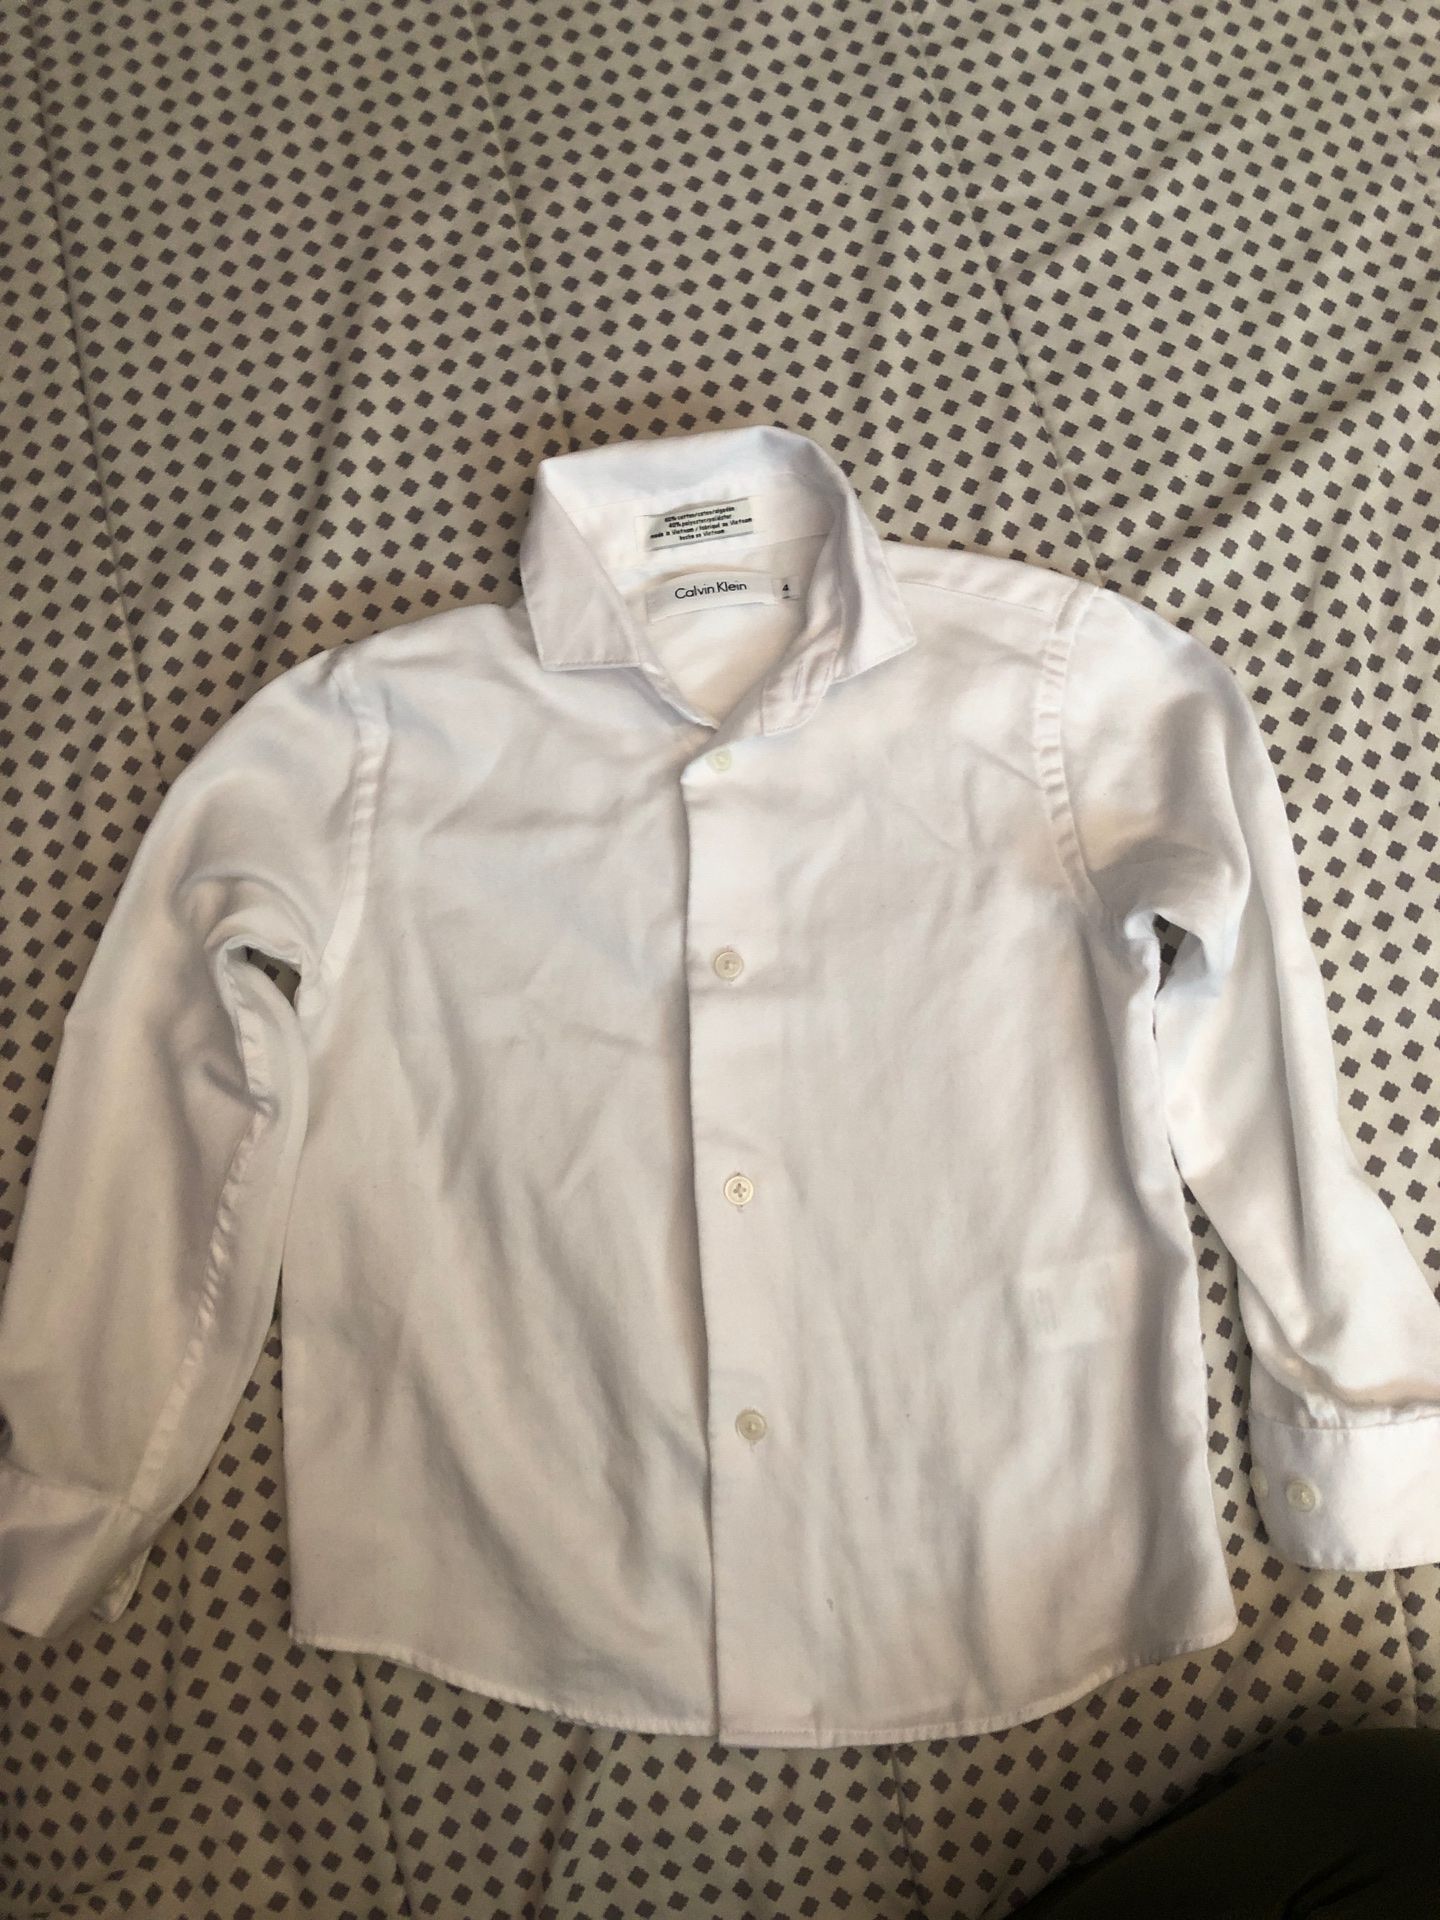 White button up dress shirt